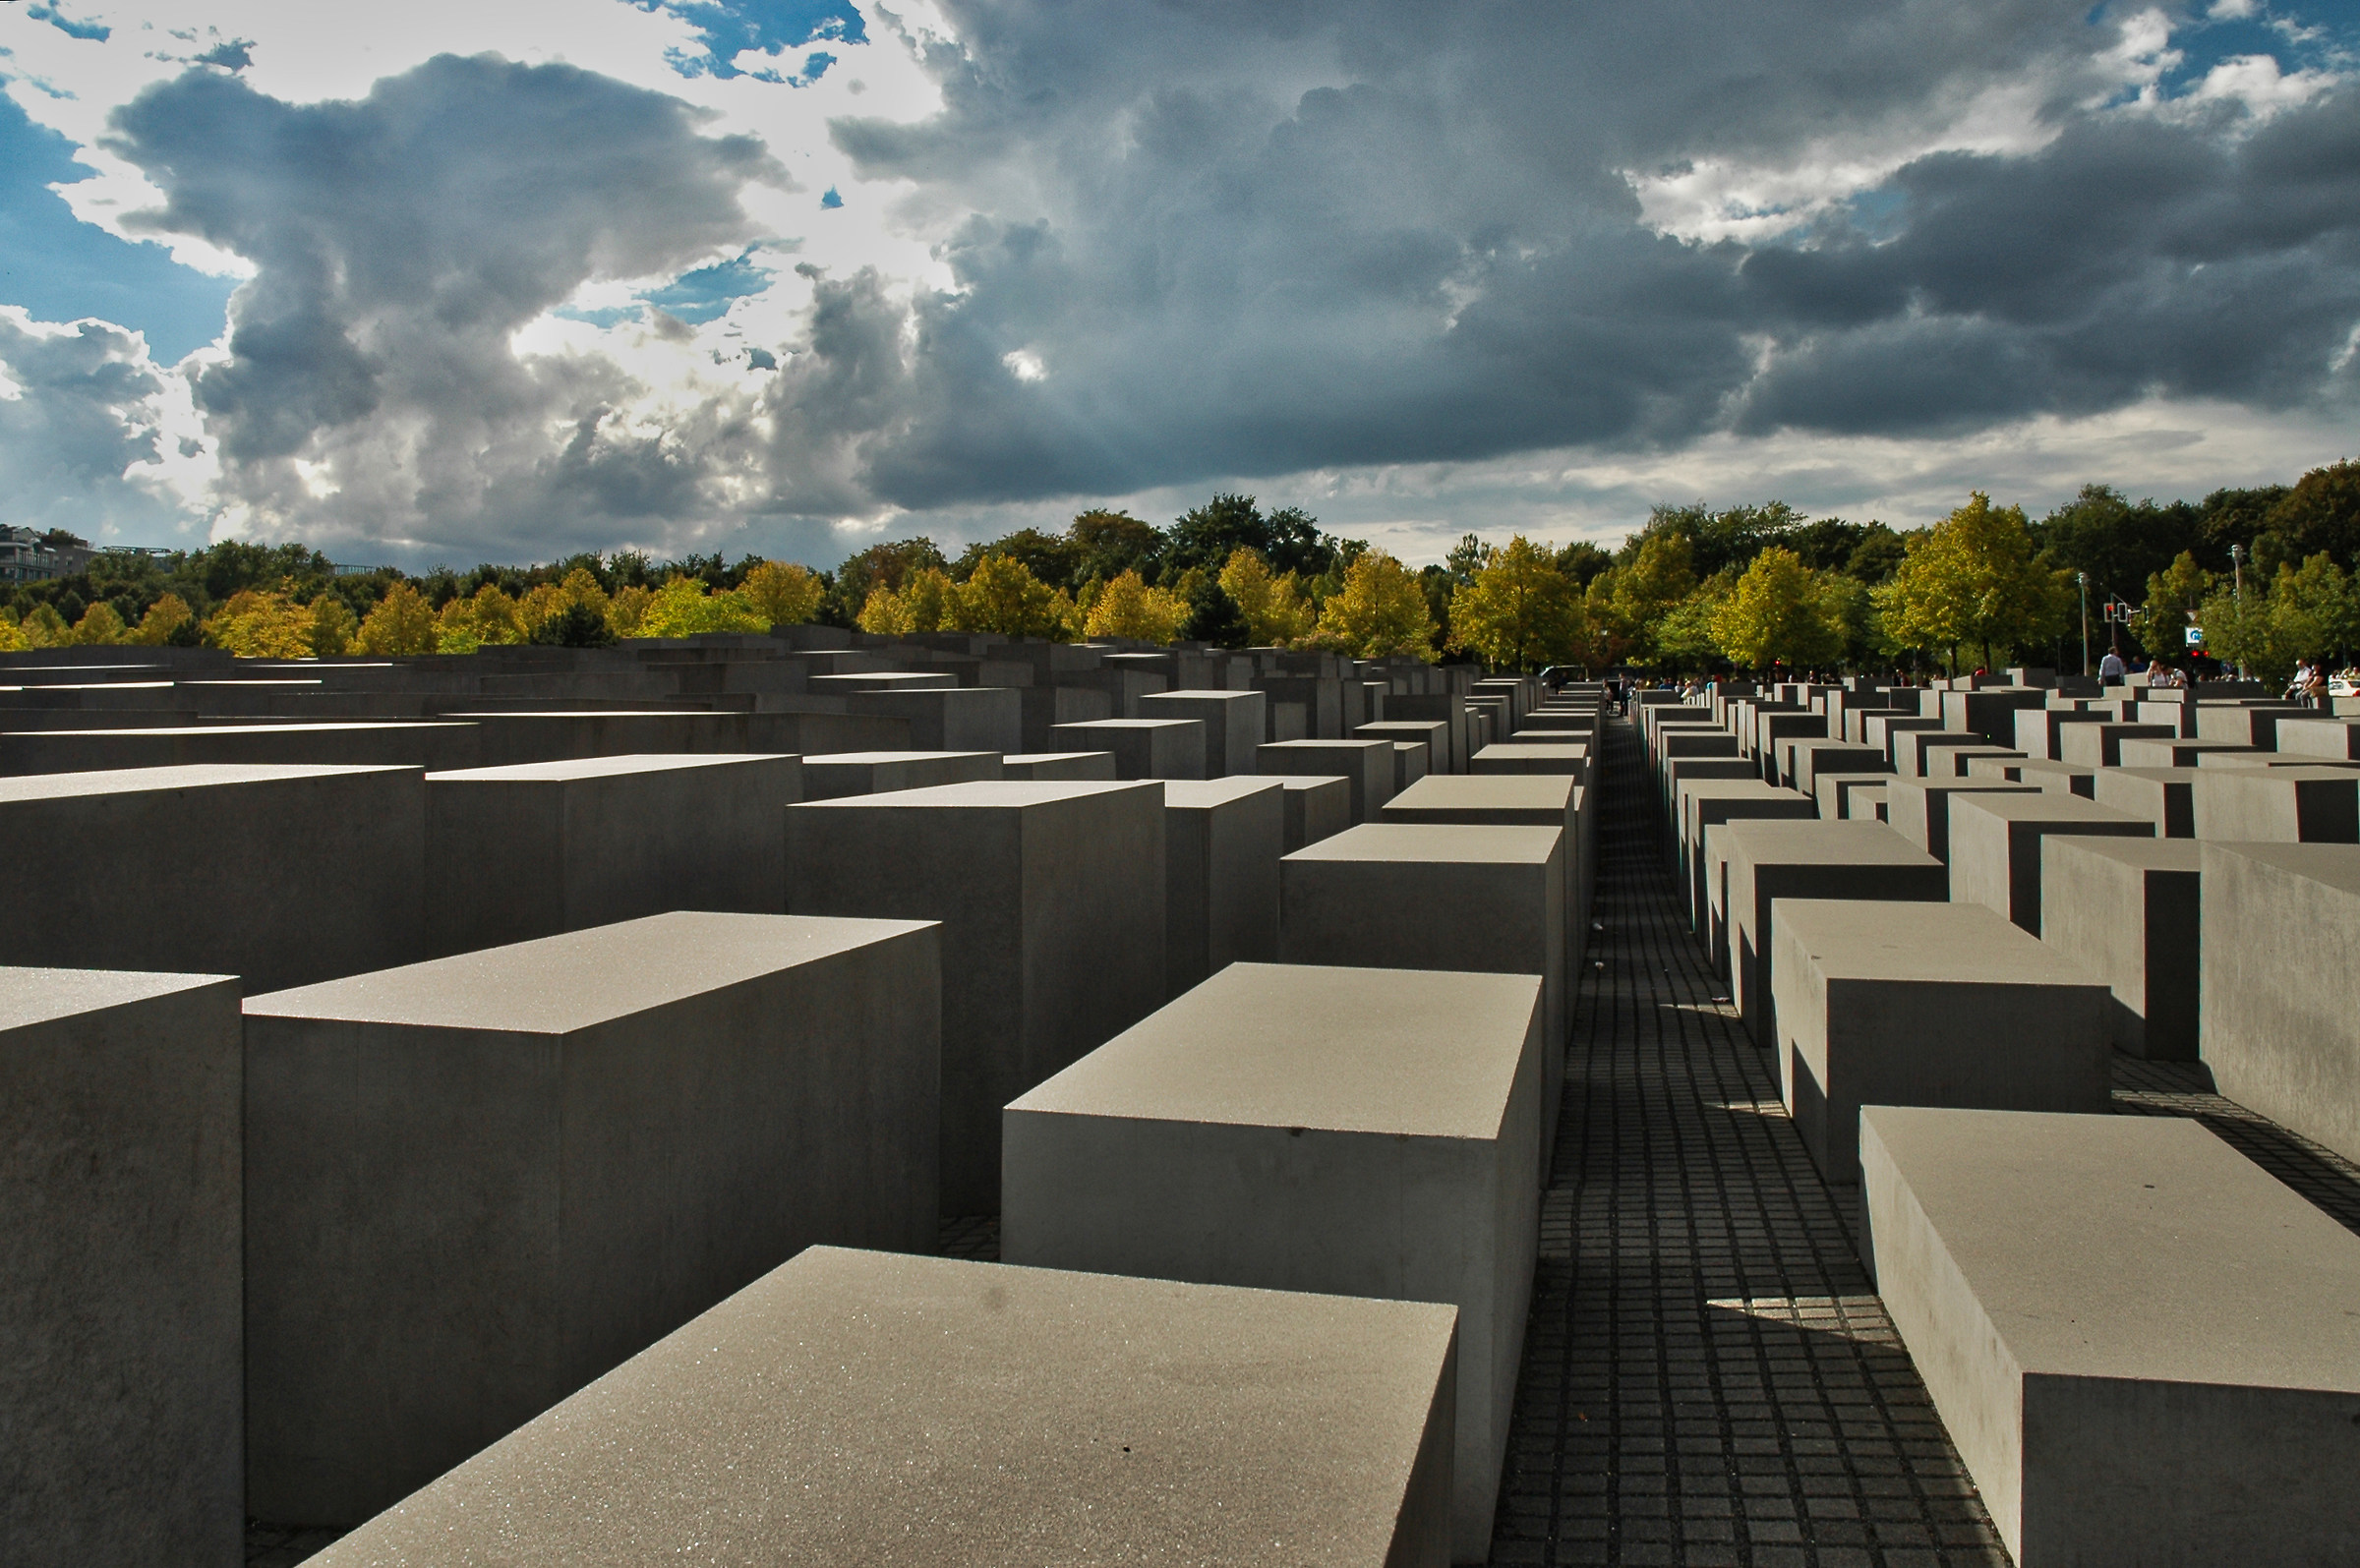 Holocaust Memorial in Berlin...